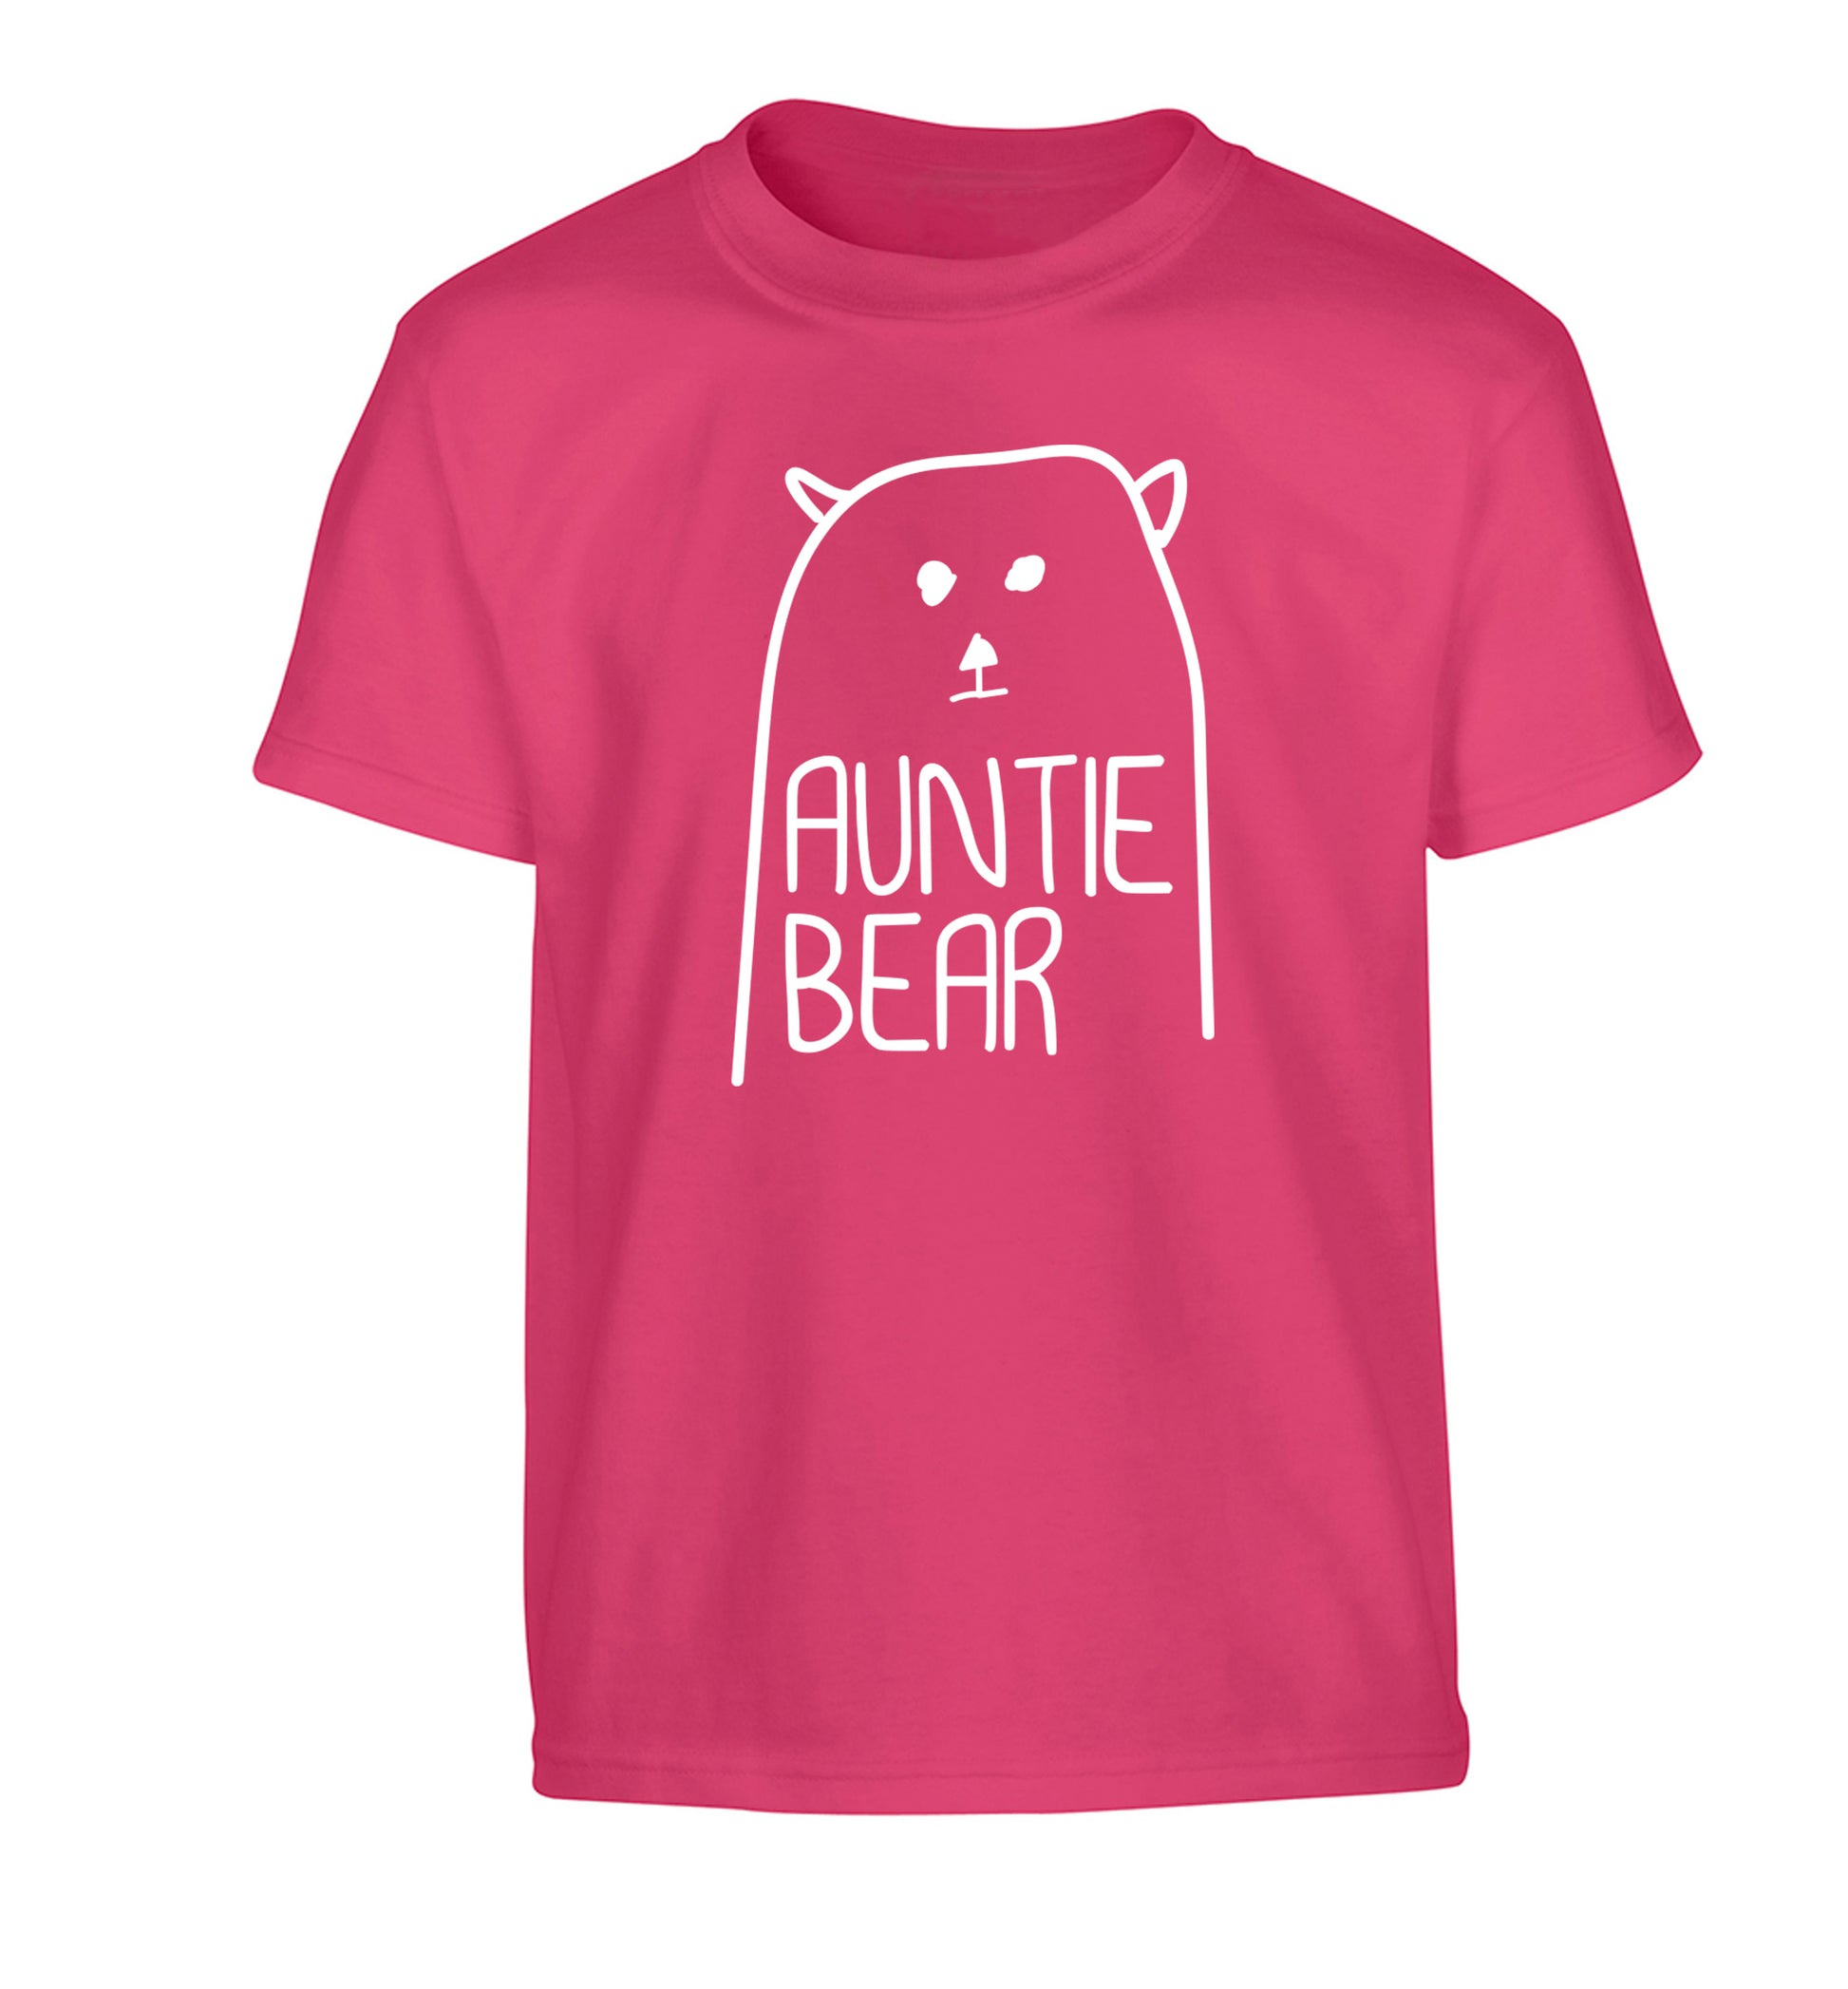 Auntie bear Children's pink Tshirt 12-13 Years